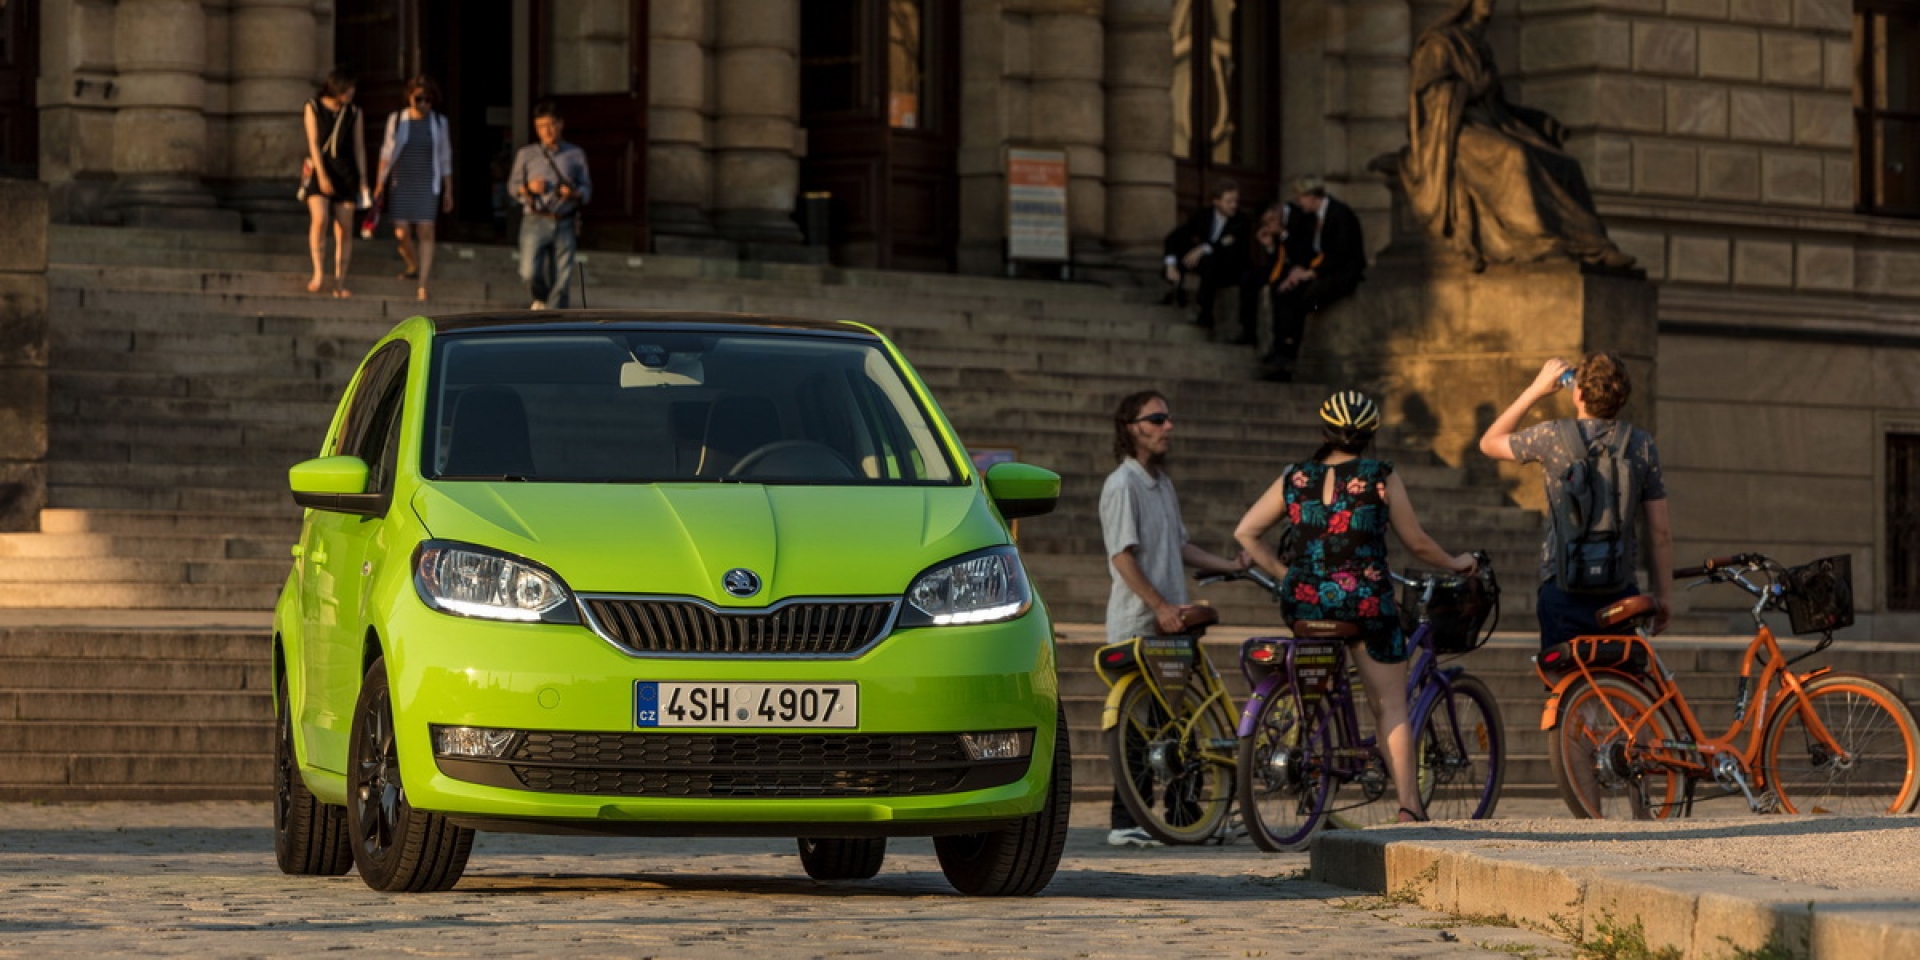 官方新聞稿。歐洲最佳城市小車 Škoda Citigo悠遊上市